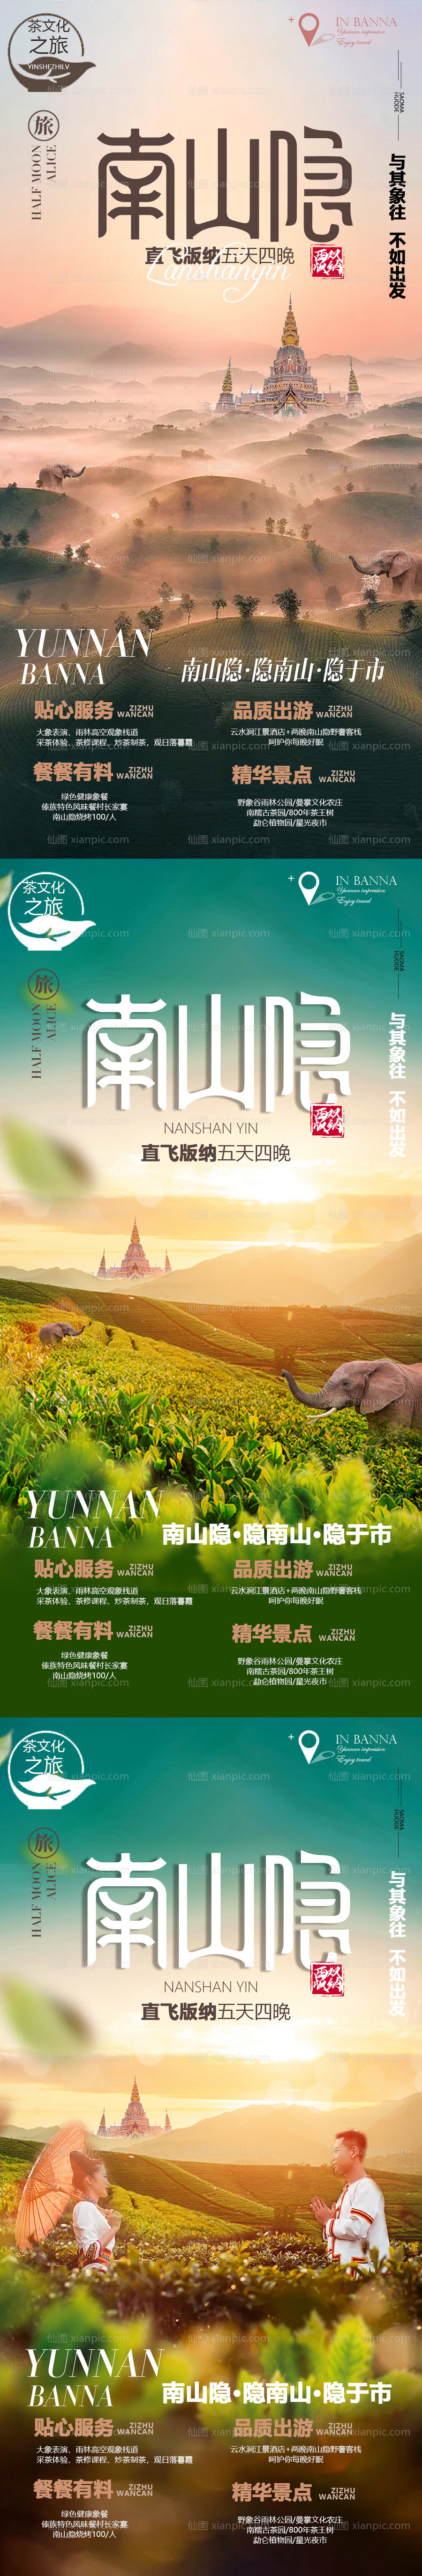 素材乐-云南西双版纳旅游系列海报